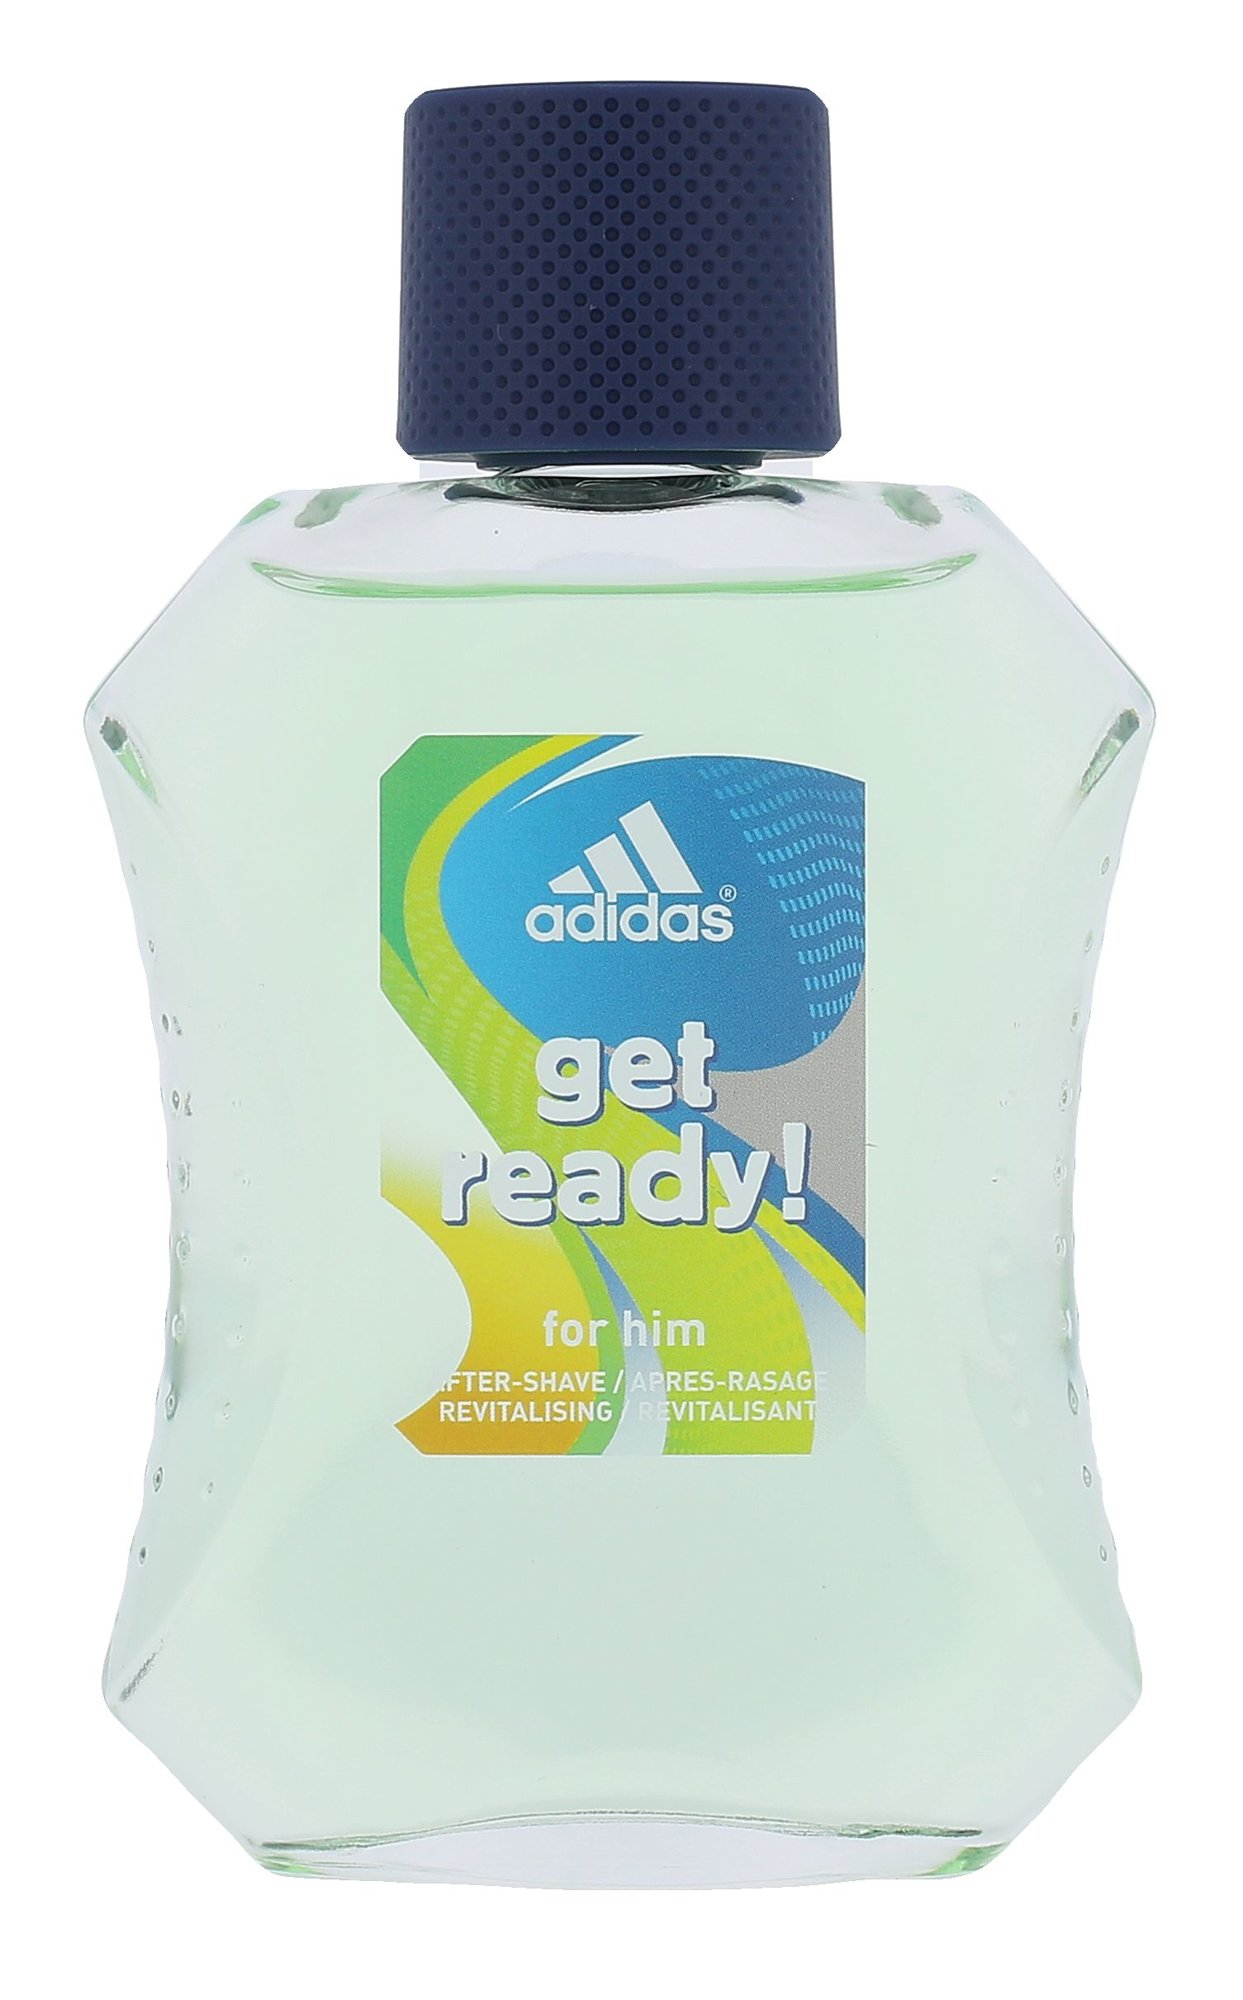 Adidas Get Ready! 100ml vanduo po skutimosi